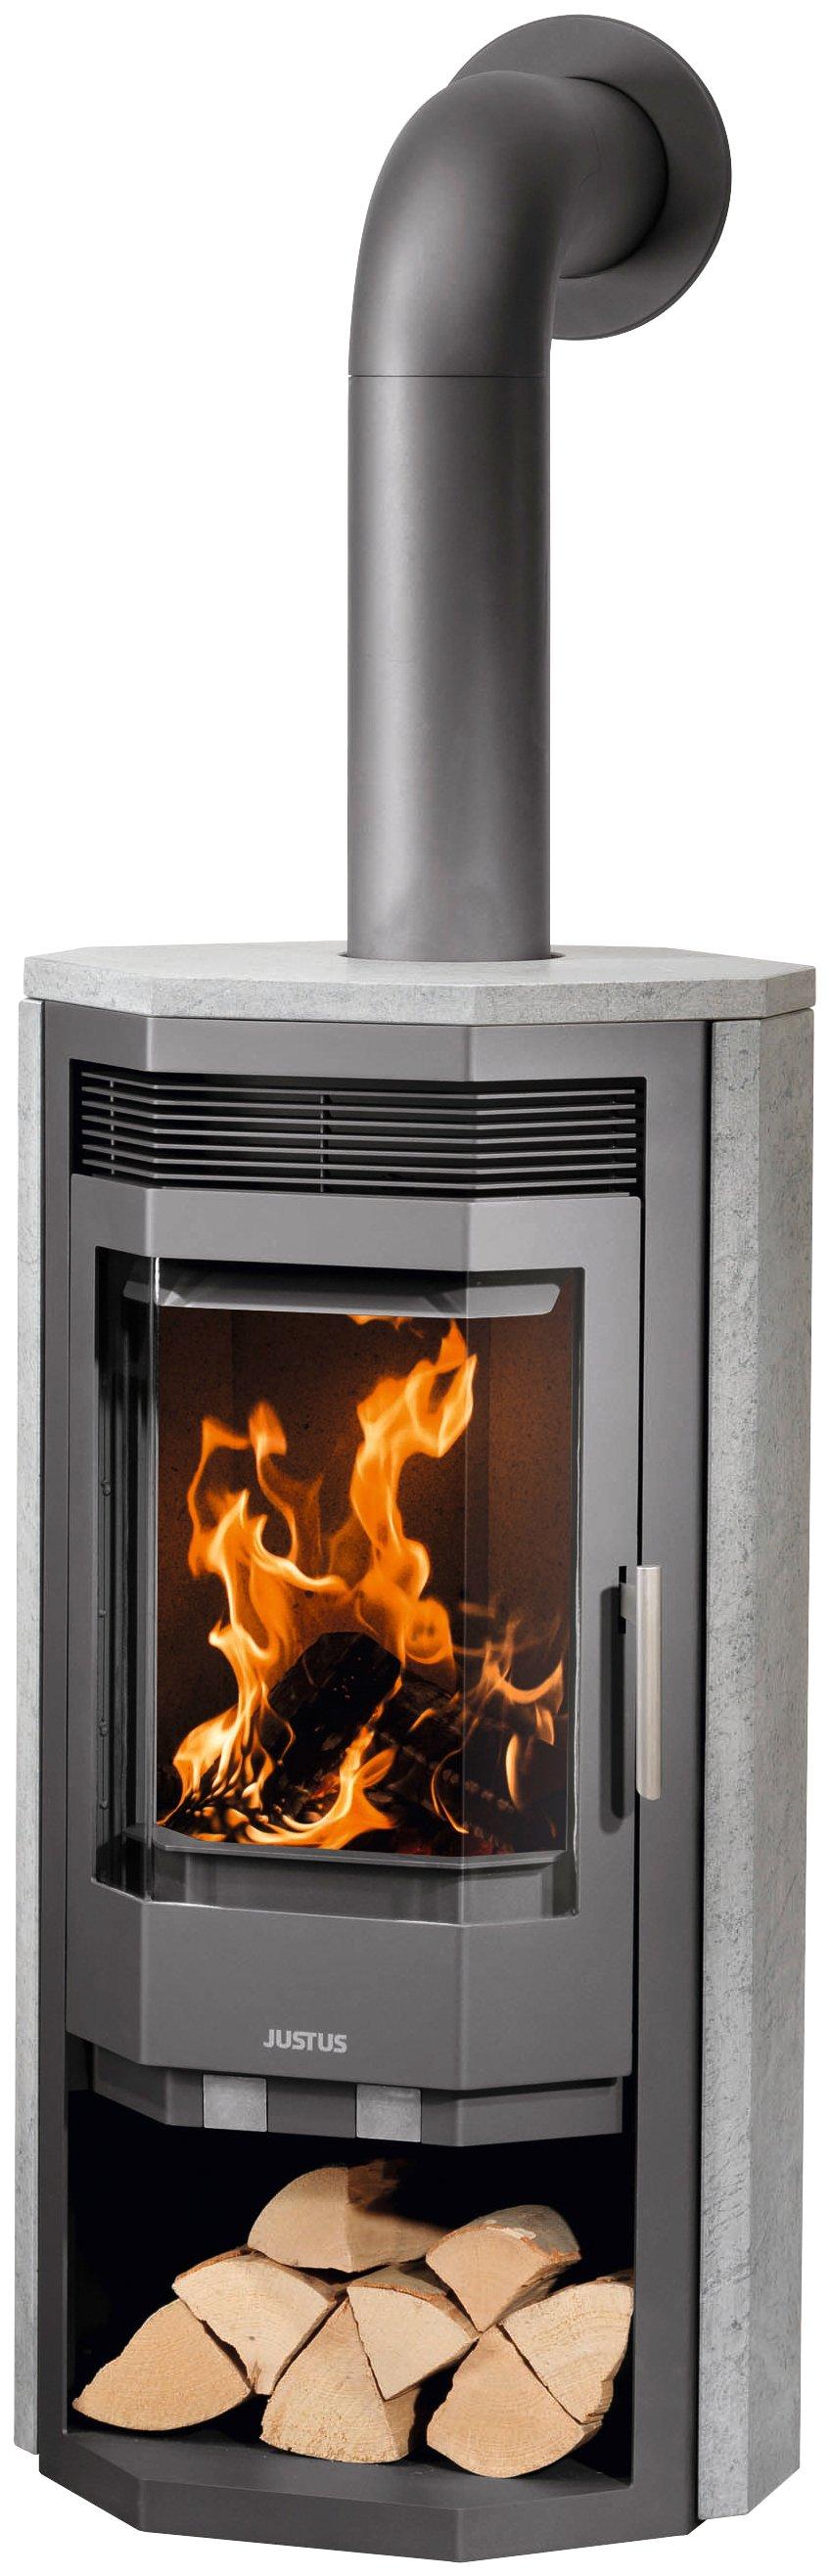 Gas Fireplace Sand Elegant Kamine Online Kaufen Möbel Suchmaschine